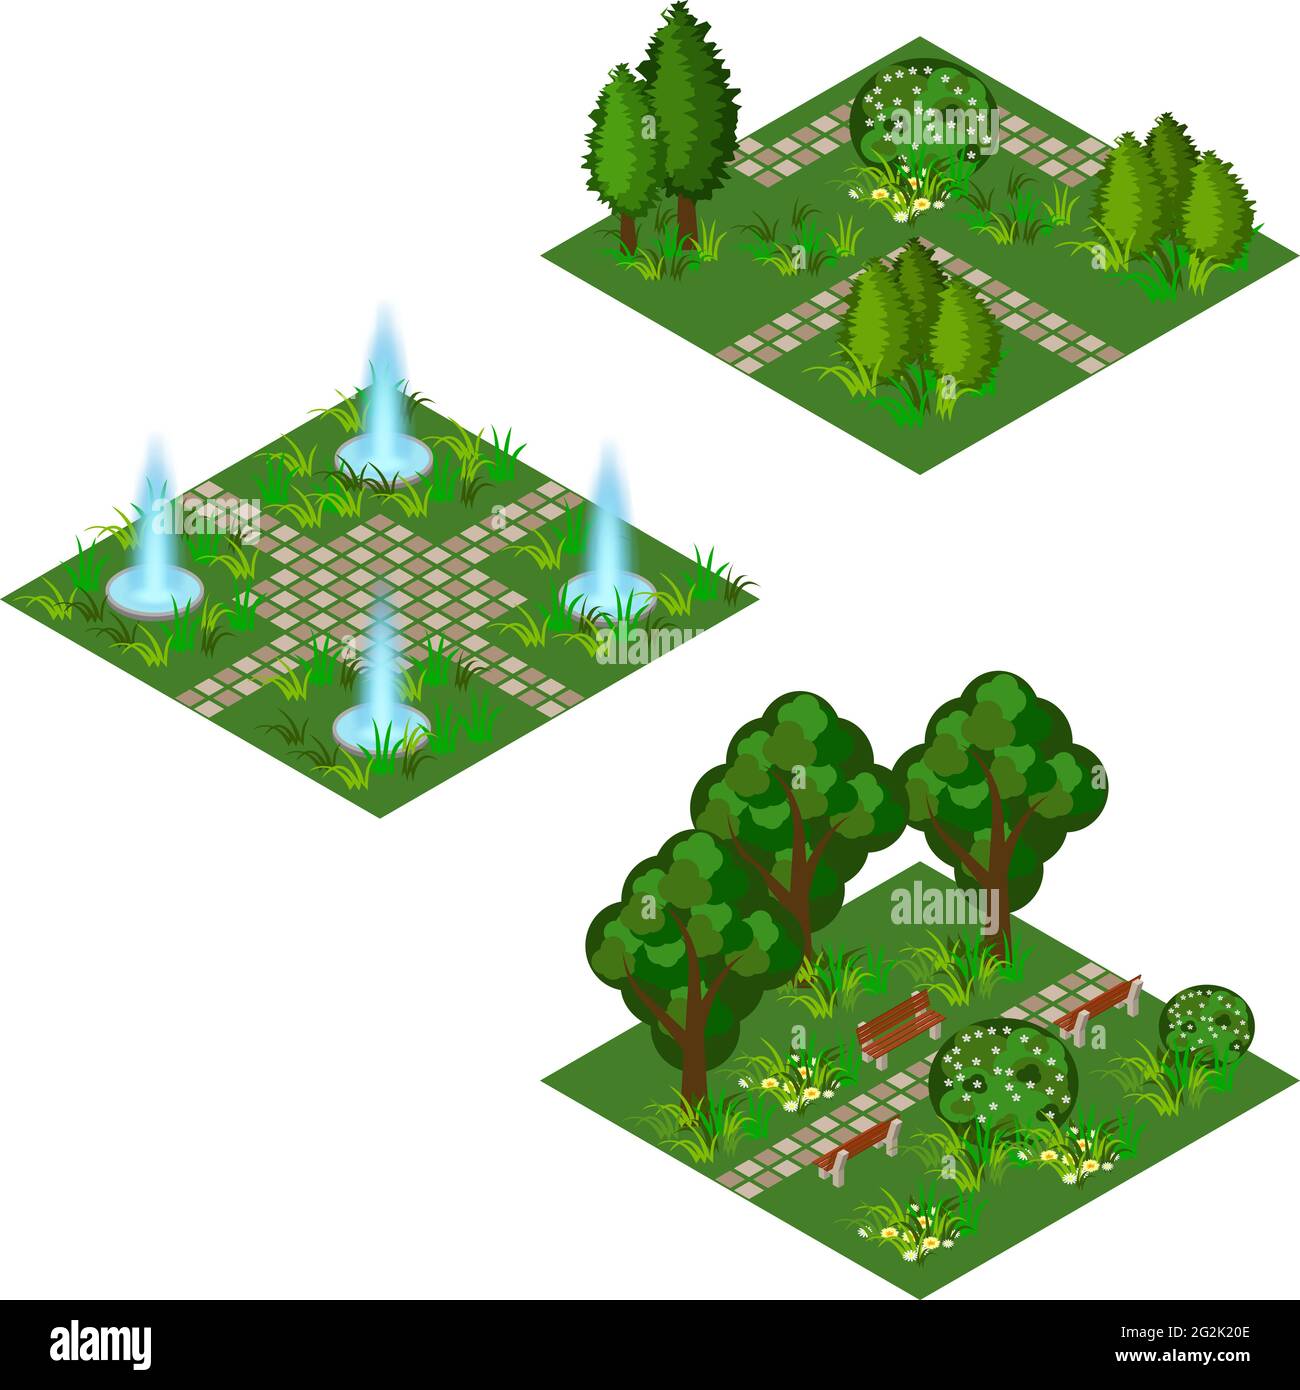 Garten isometrisches Set, um Gartenlandschaft Szene für Spiel Asset oder Cartoon-Hintergrund zu erstellen. Brunnen, Blumen, Sträucher und Bäume, gepflasterter Spaziergang. Isoliert Stock Vektor